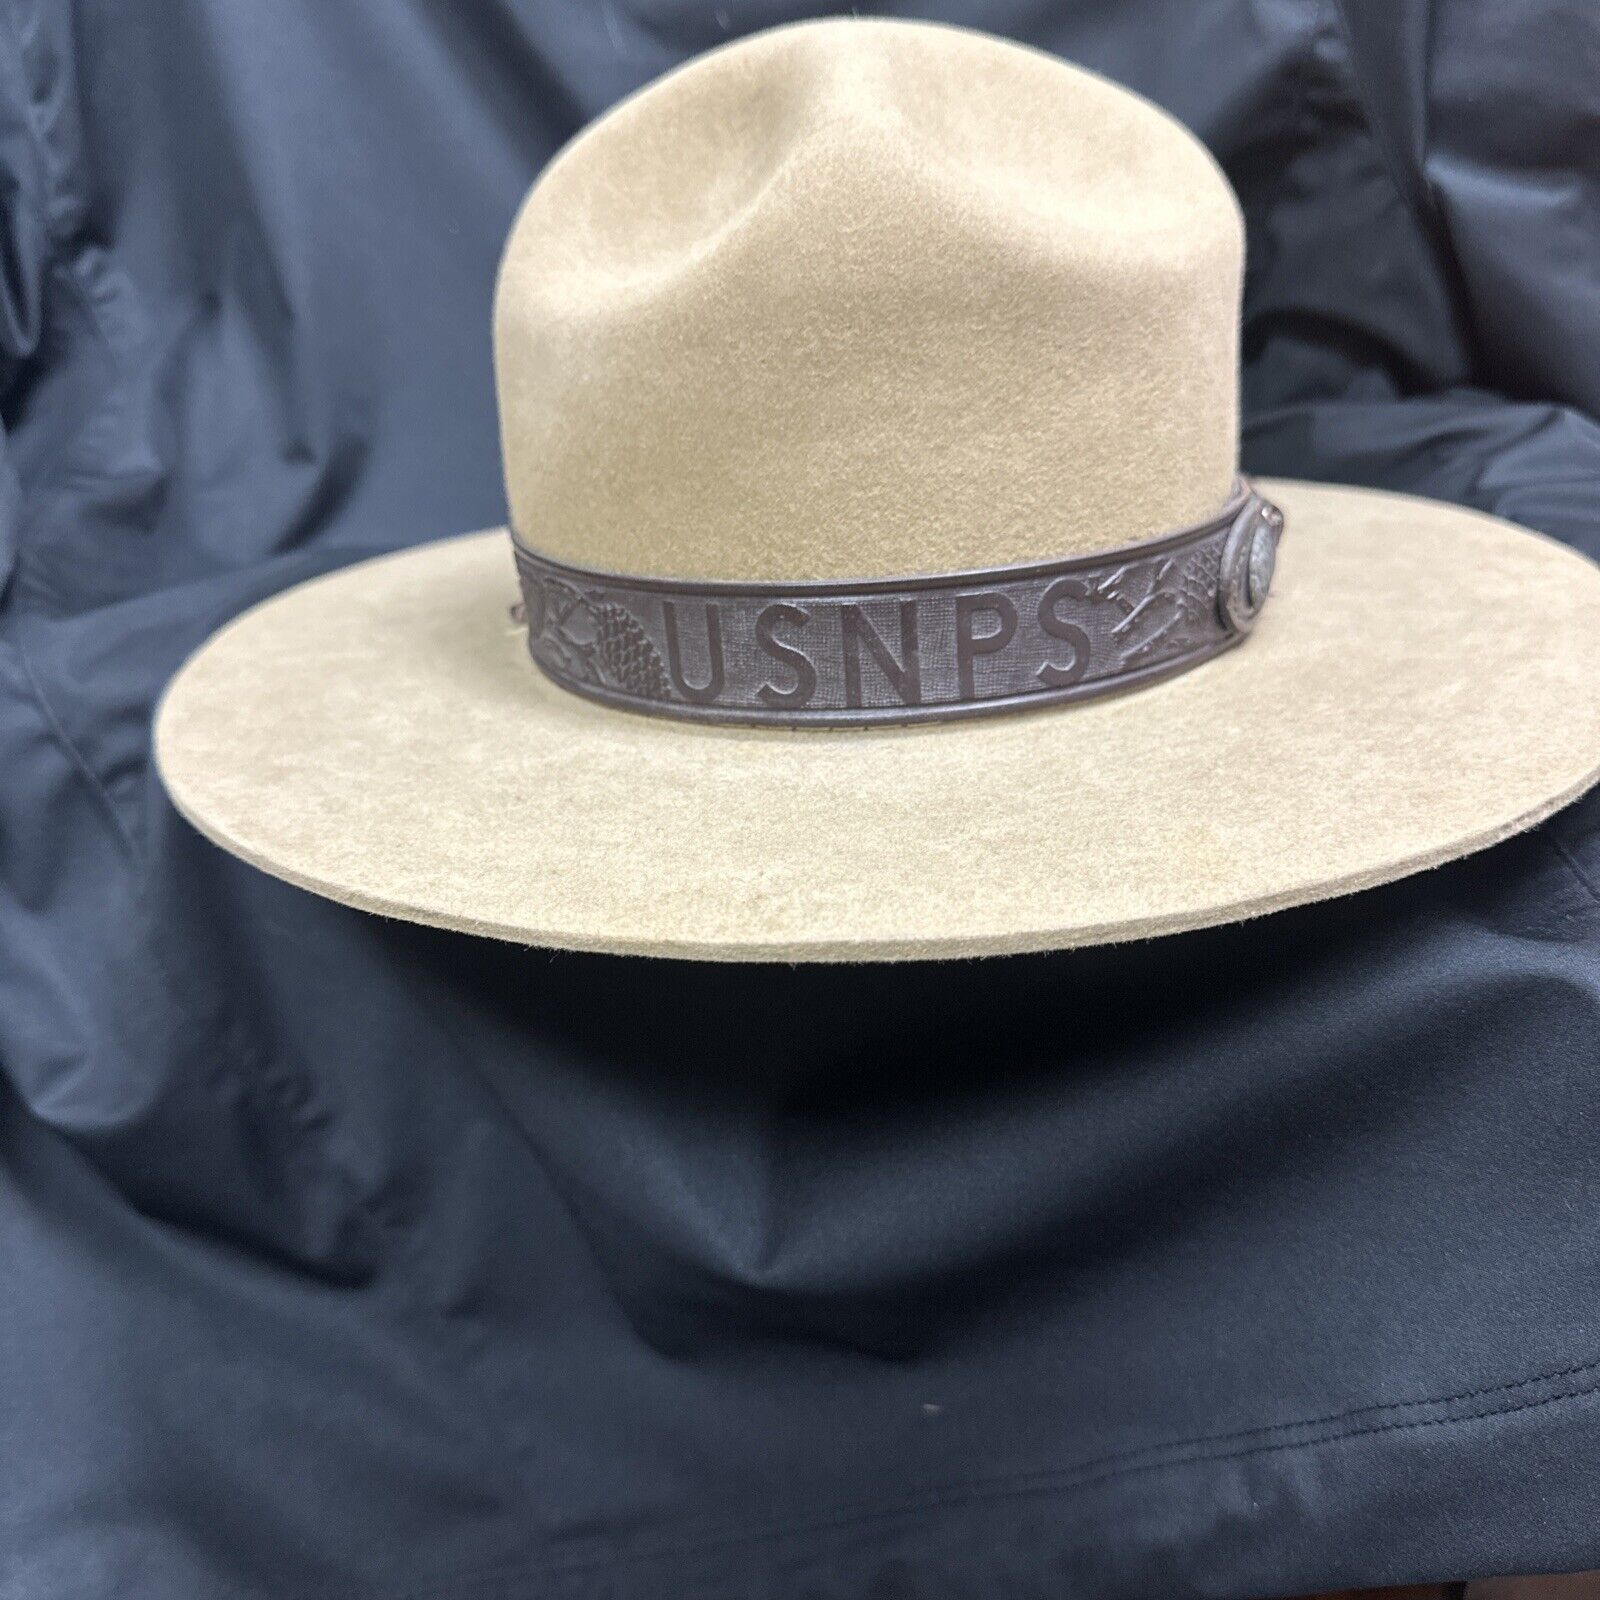 Vintage USNPS Stetson Campaign Hat Size 7